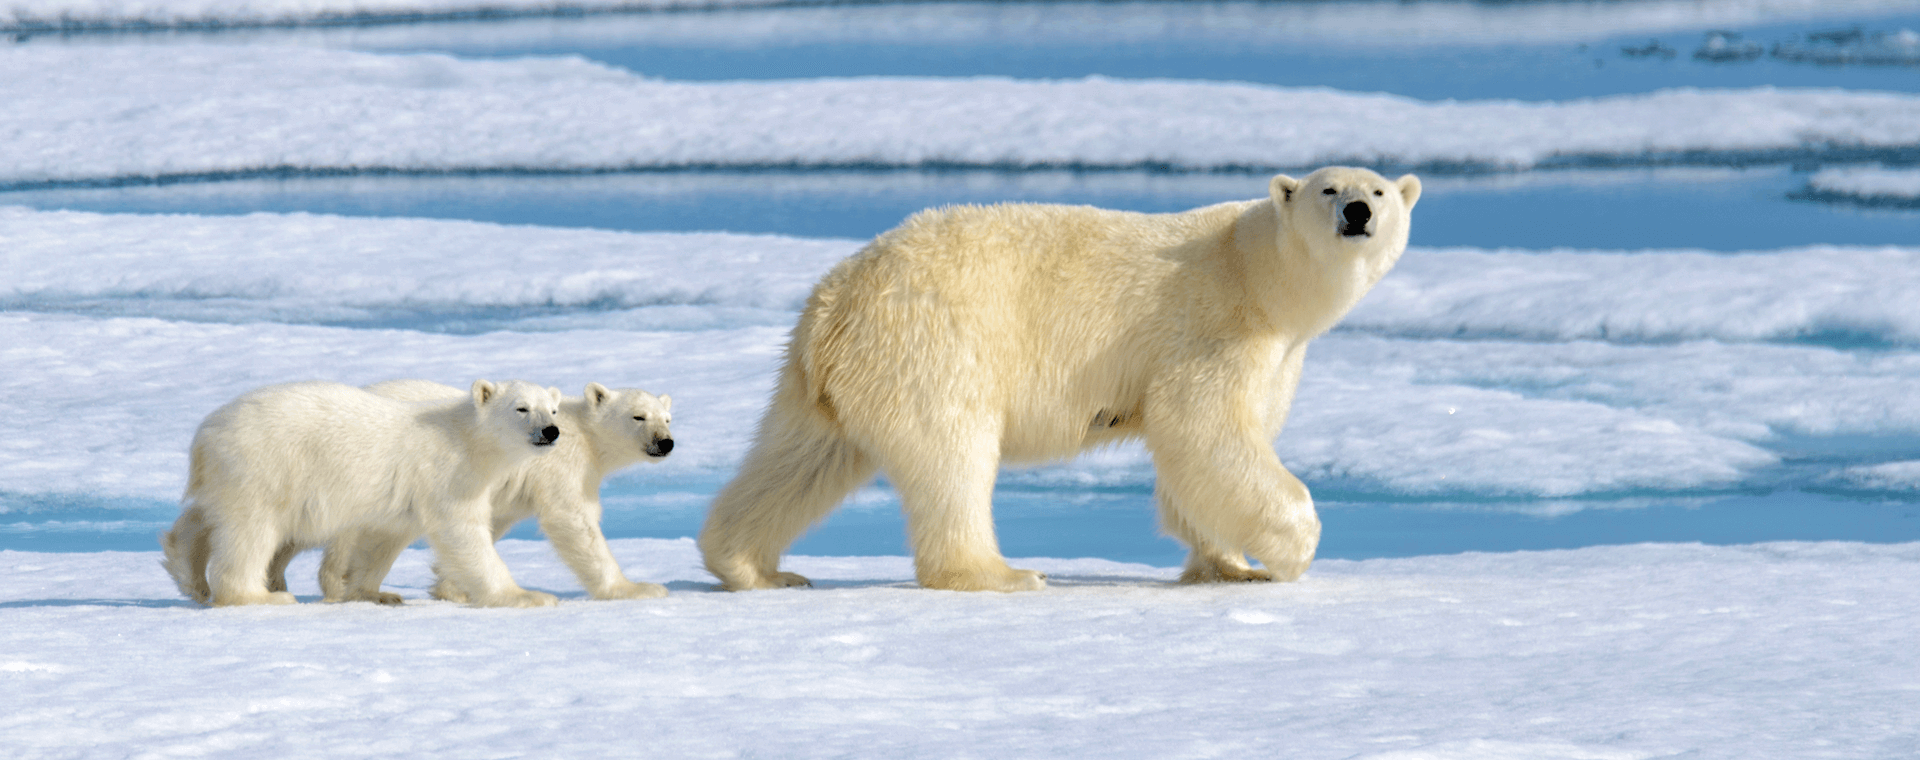 polar bear mom and cub on ice